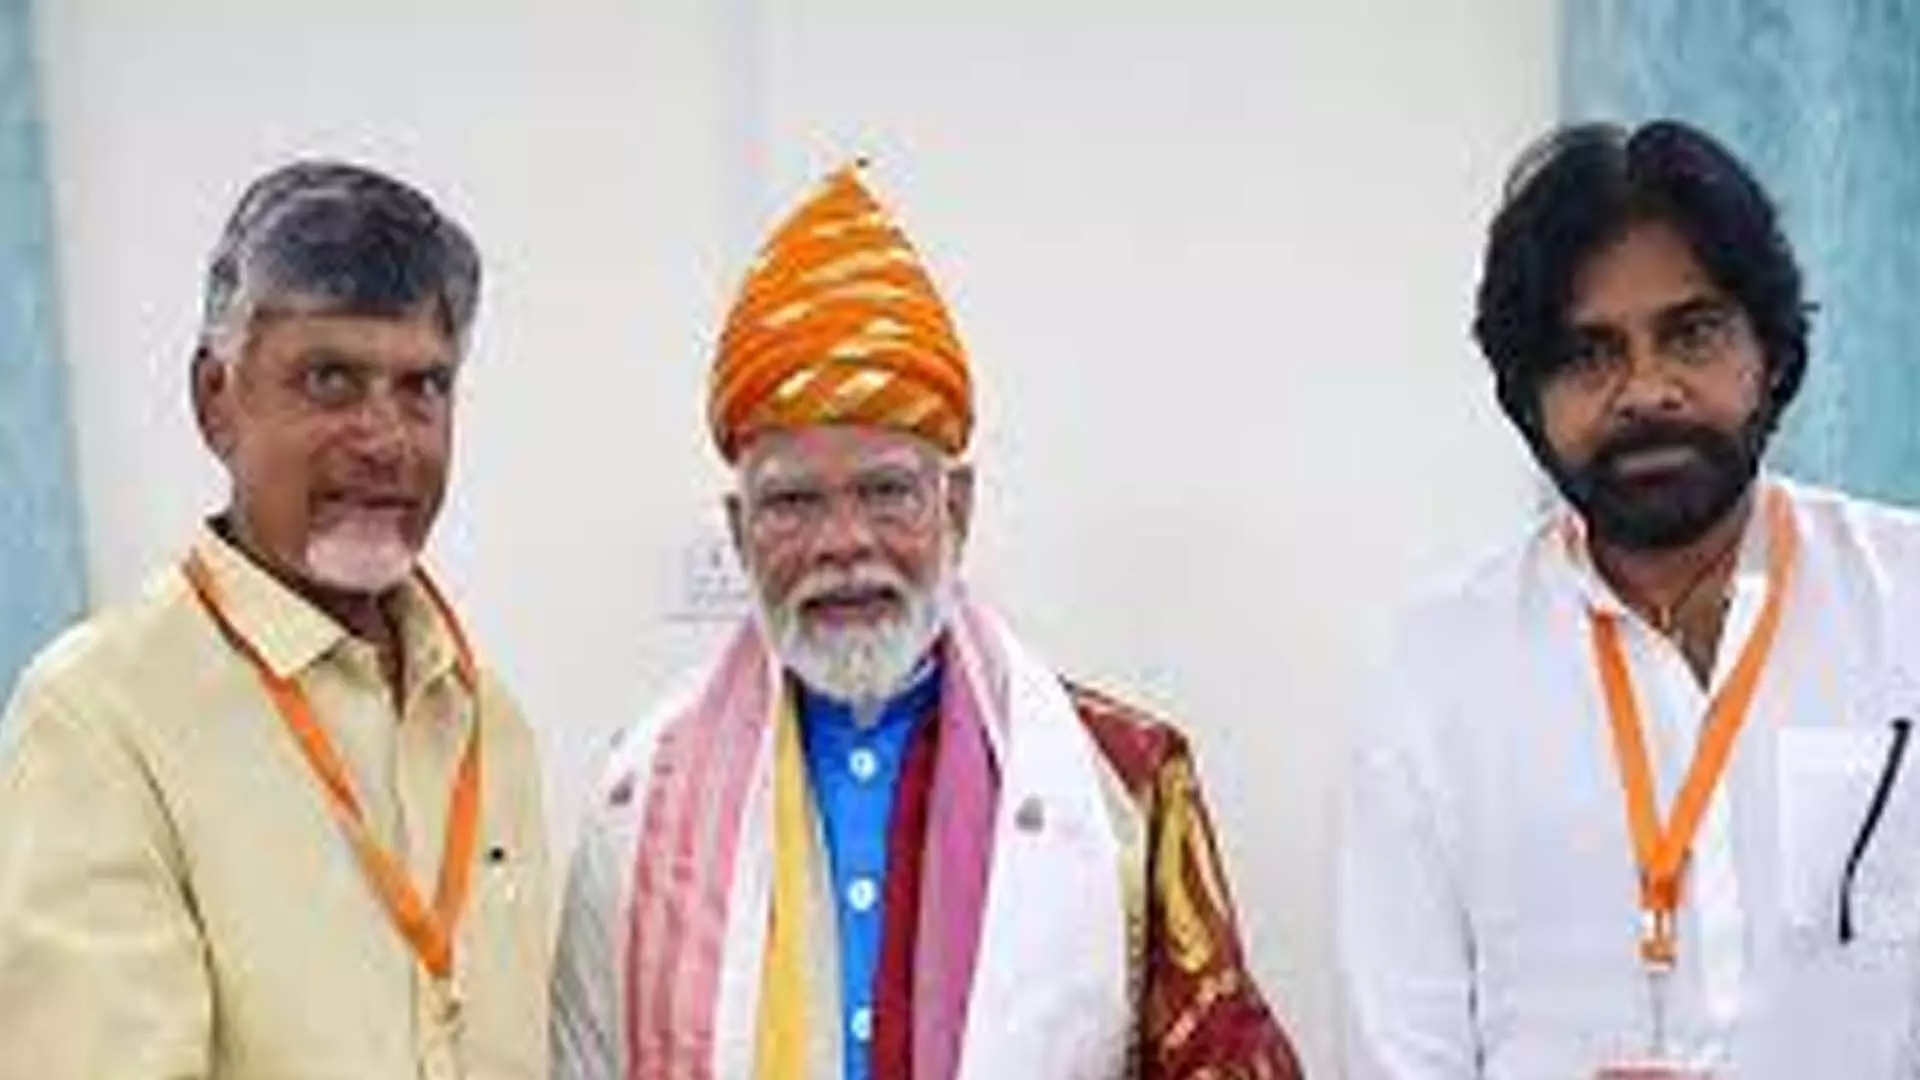 Andhra Pradesh: एनडीए की जीत पर चंद्रबाबू नायडू ने कहा, ‘उल्लेखनीय जनादेश, गठबंधन में विश्वास’ जताया